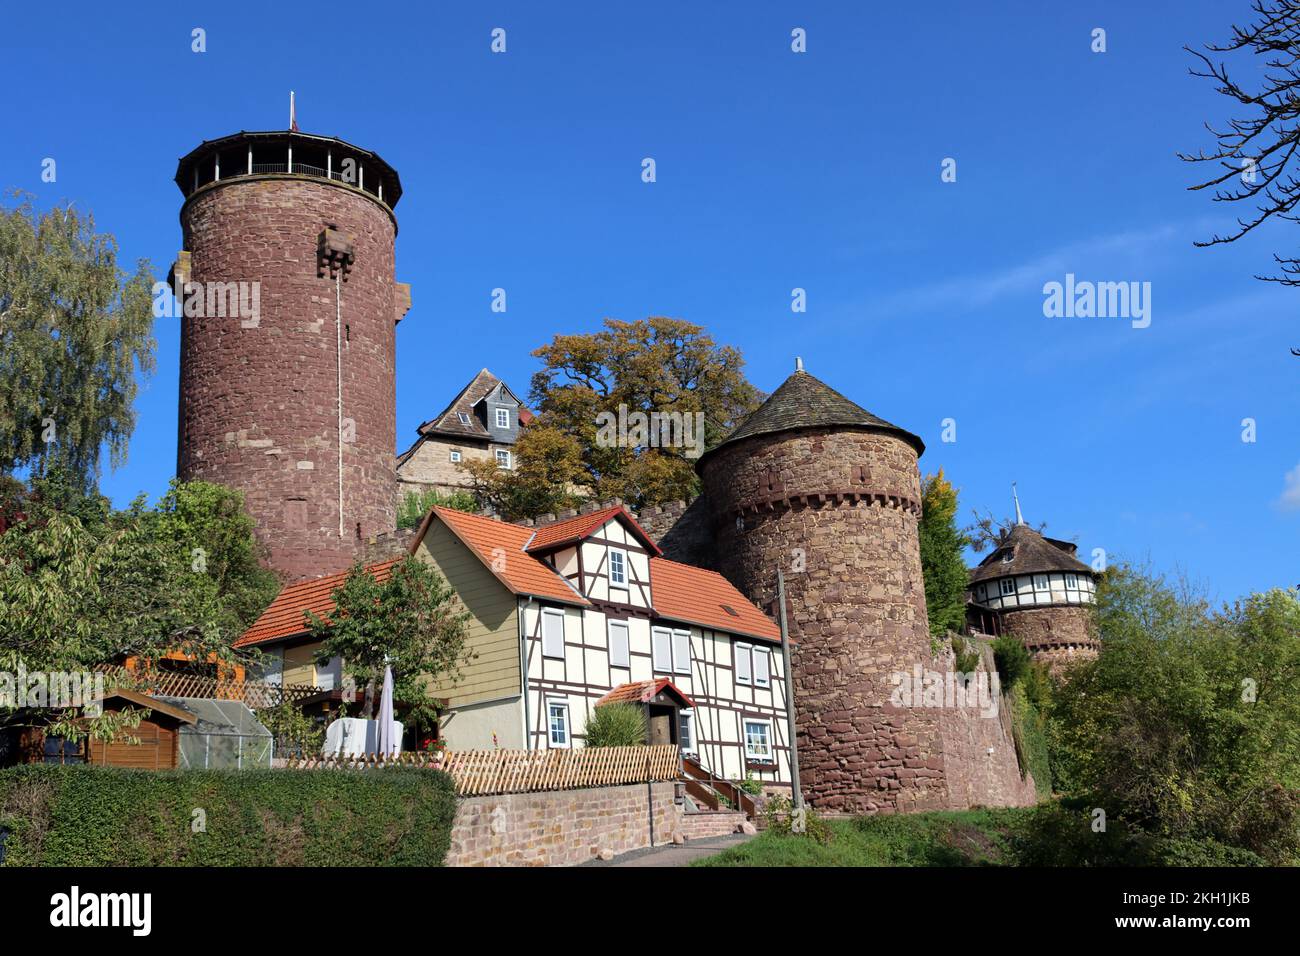 historische Trendelburg in der gleichnamigen Stadt, Hessen, Deutschland Foto Stock